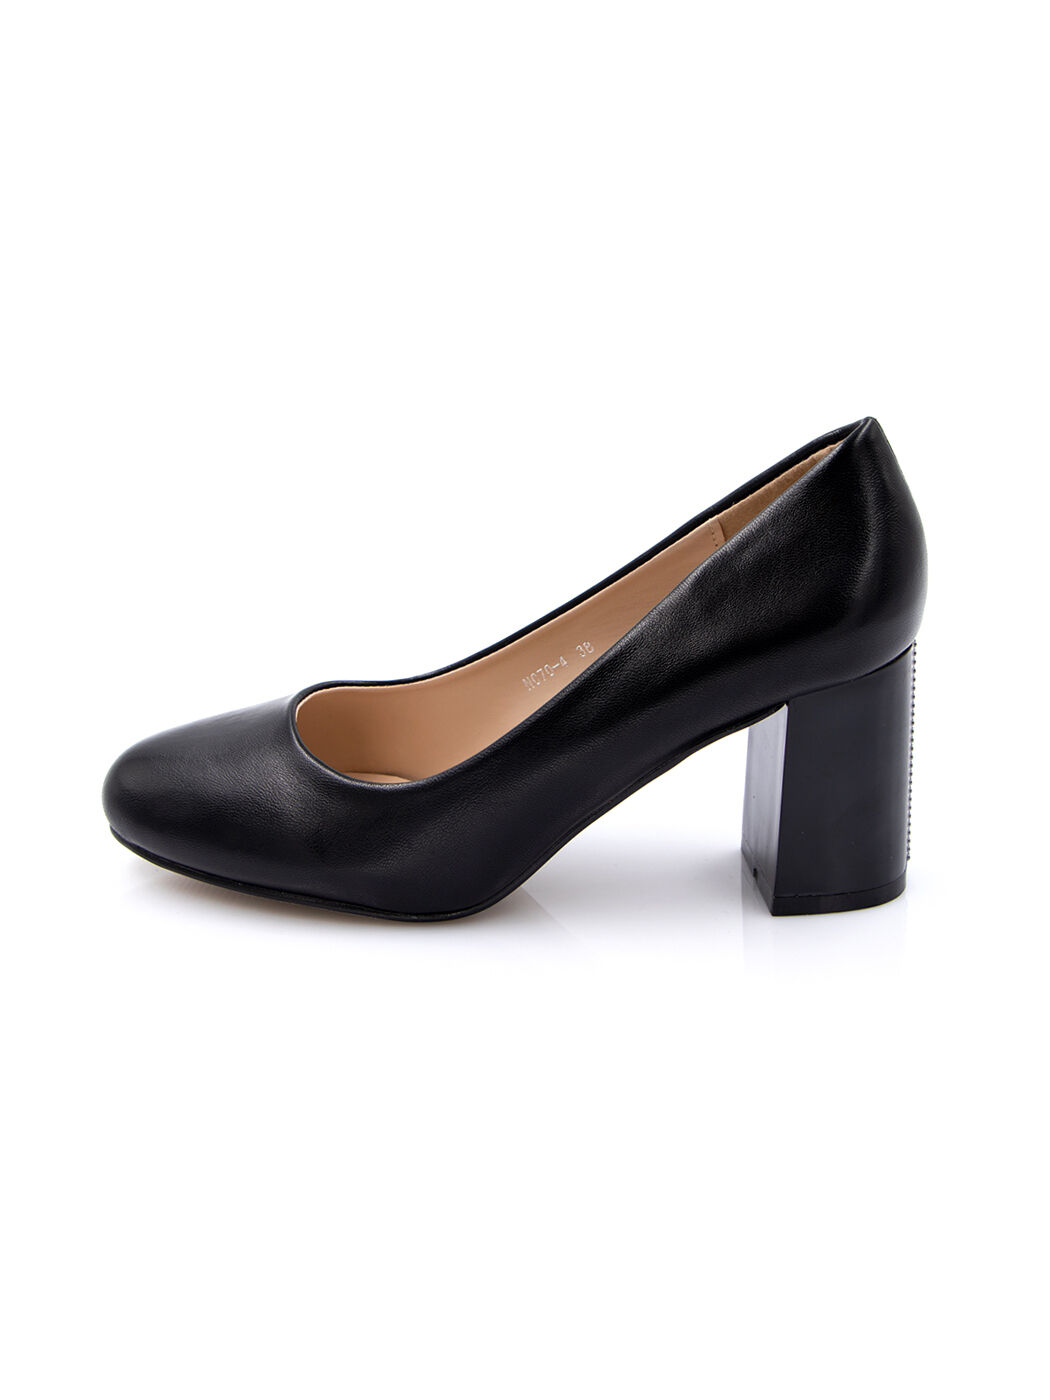 Туфли женские черные экокожа каблук устойчивый демисезон от производителя 4M